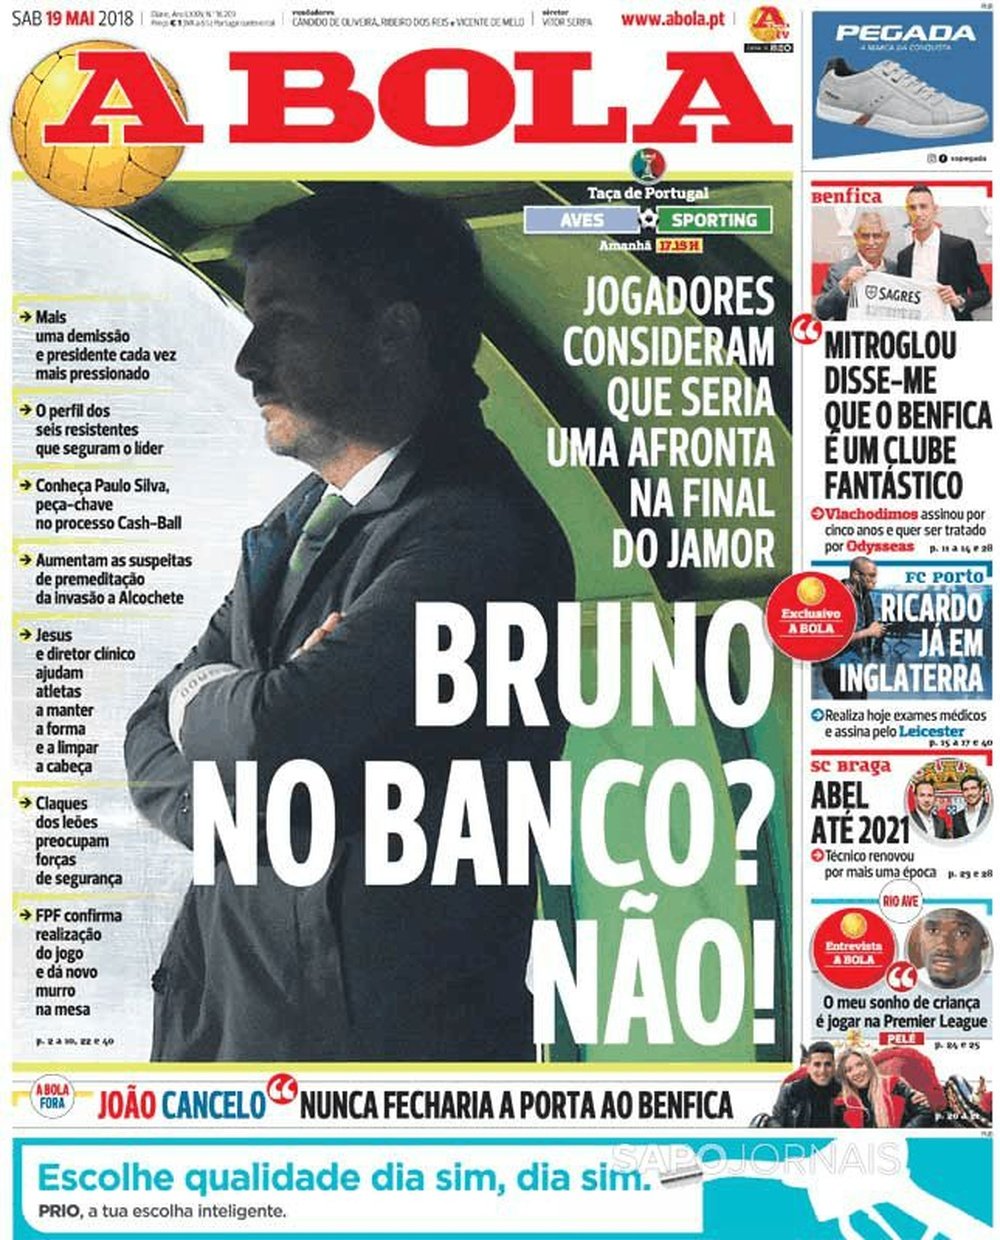 Capa do jornal 'A Bola' de 19 de maio de 2018. A Bola